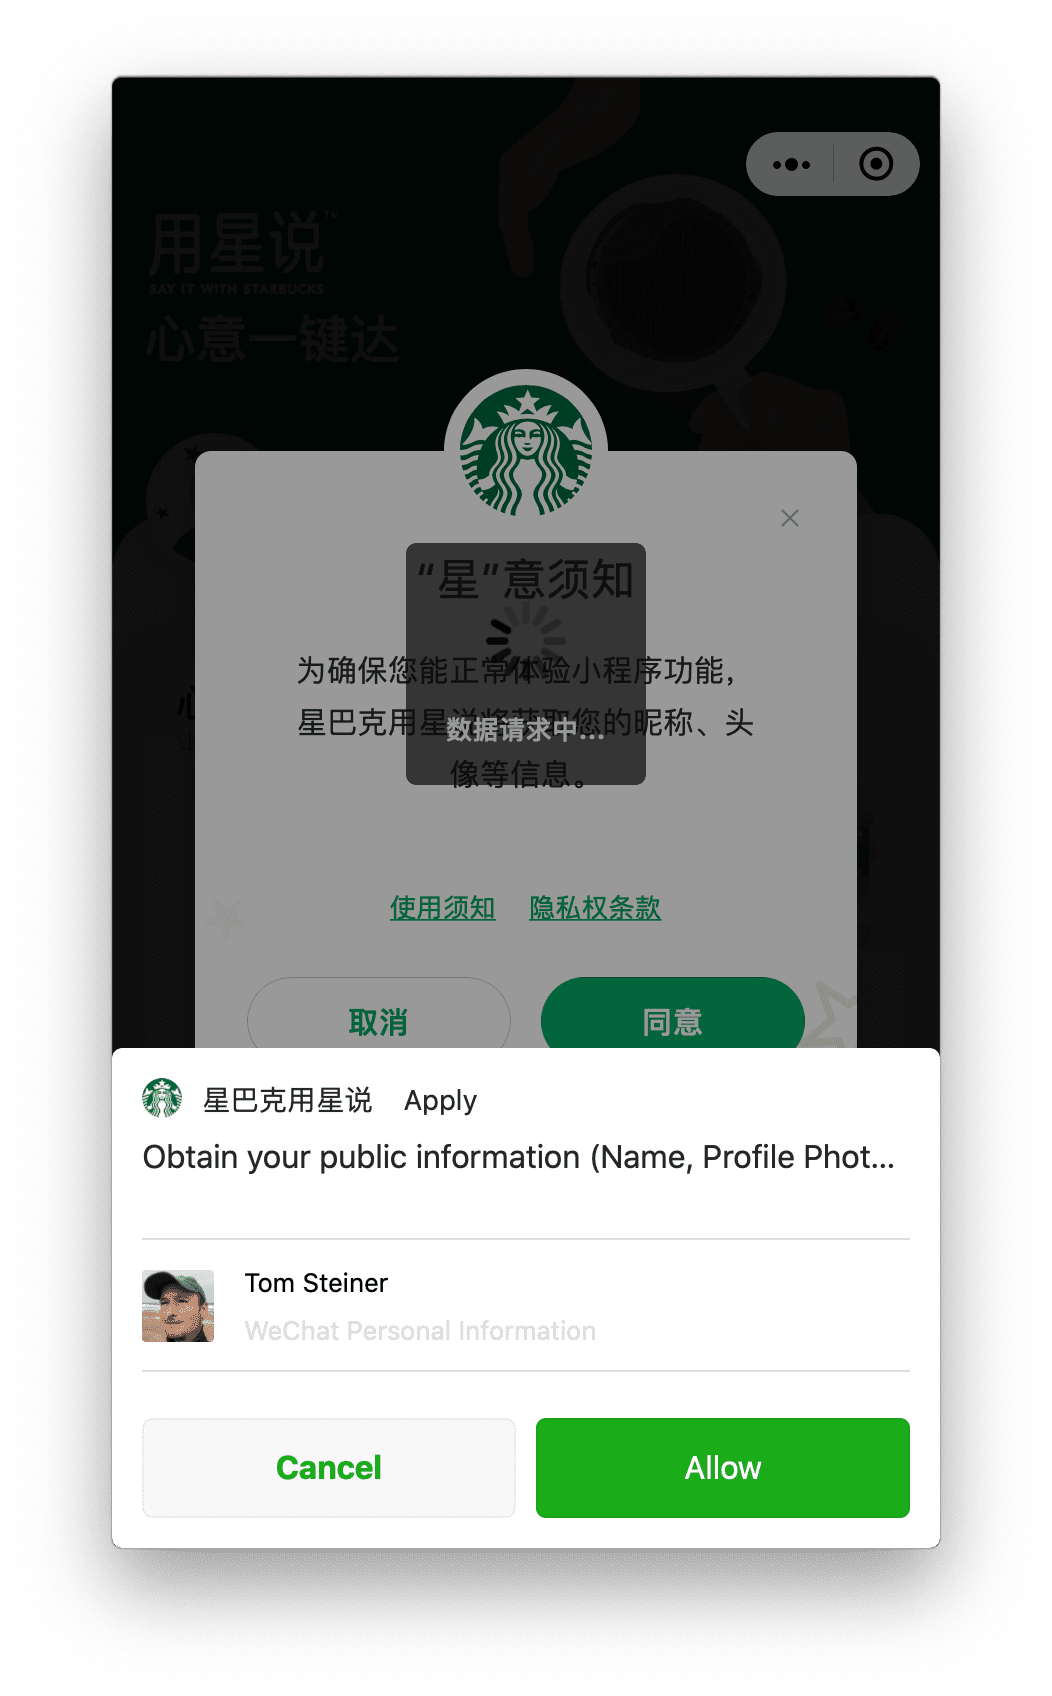 Miniaplikacja Starbucks w systemie macOS prosi o uprawnienia dotyczące profilu użytkownika, które użytkownik może przyznać za pomocą komunikatu u dołu.